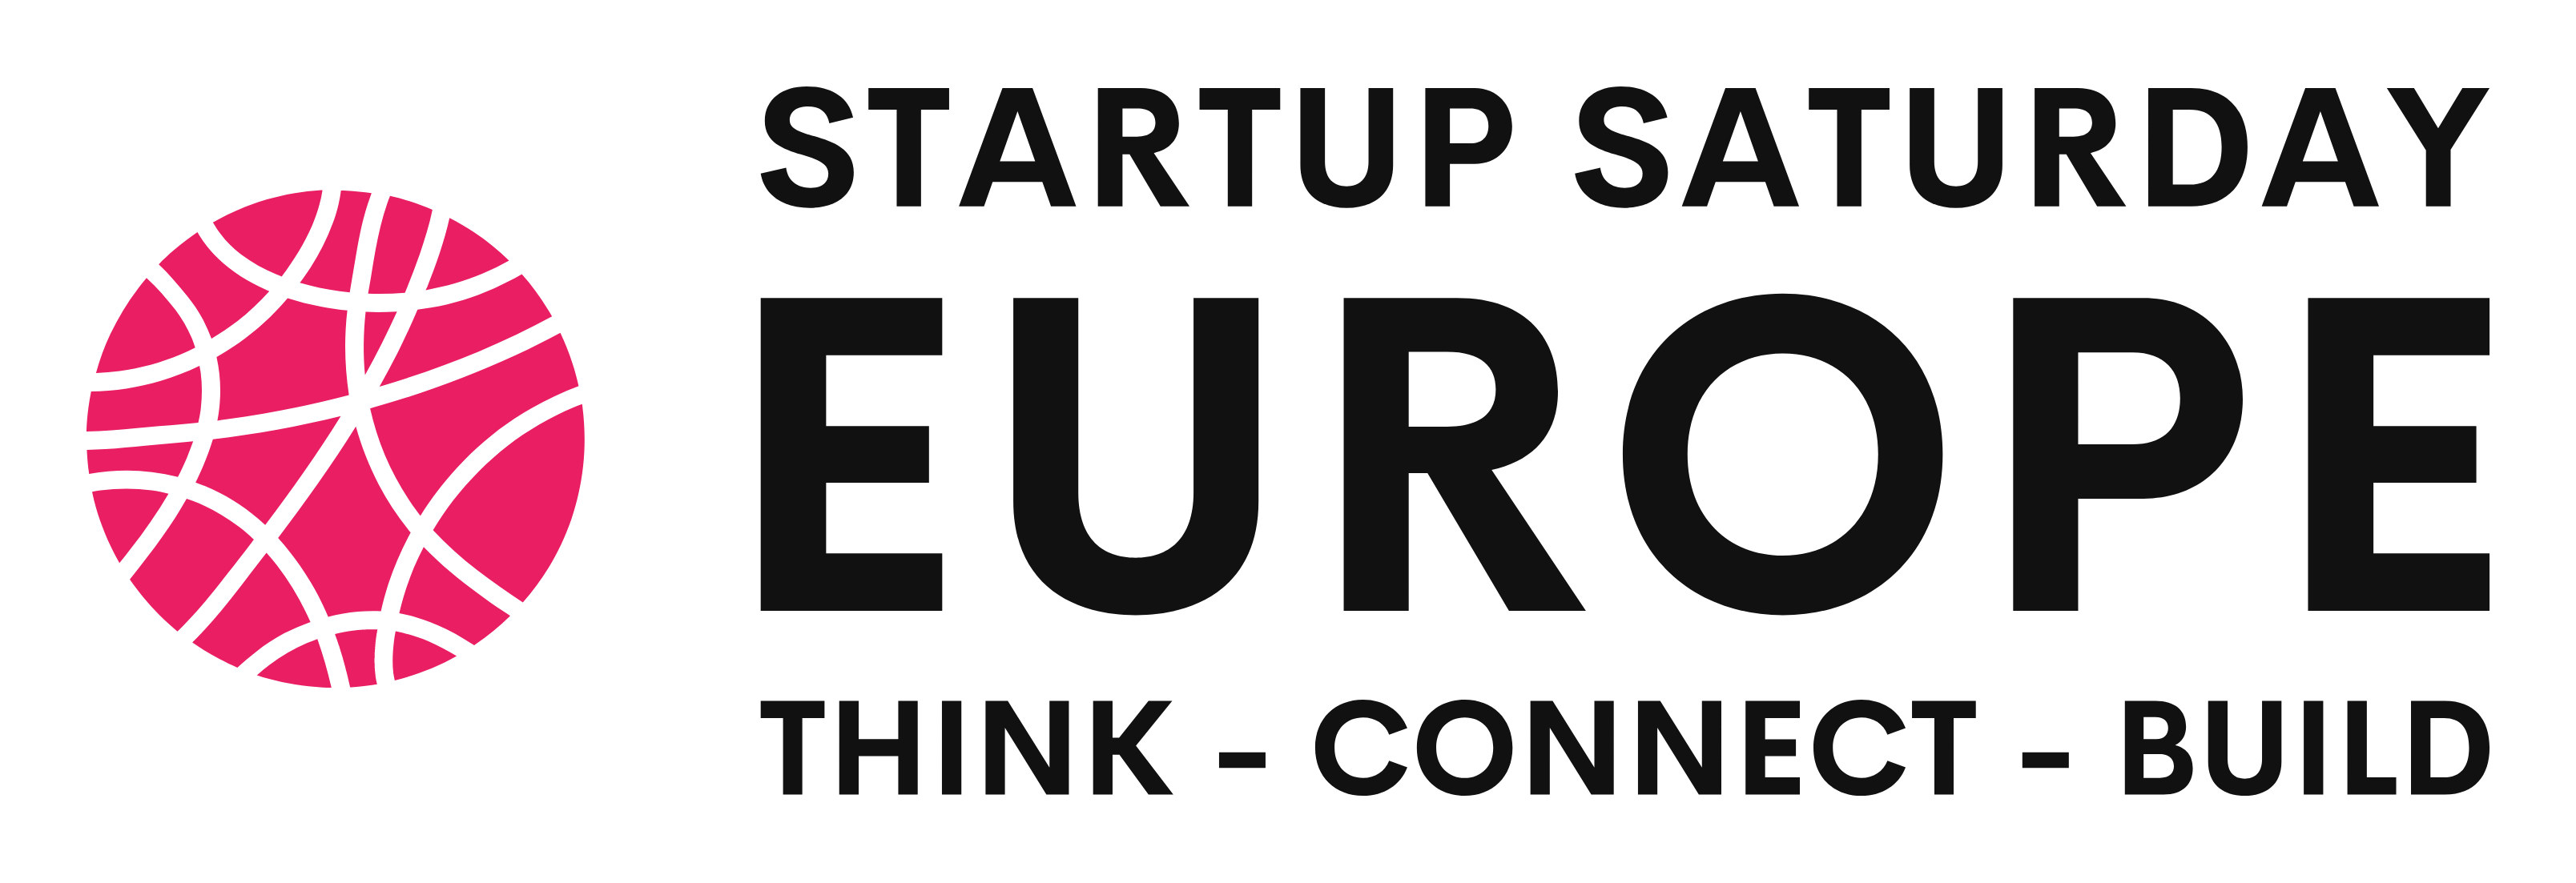 Startup Saturday Europe